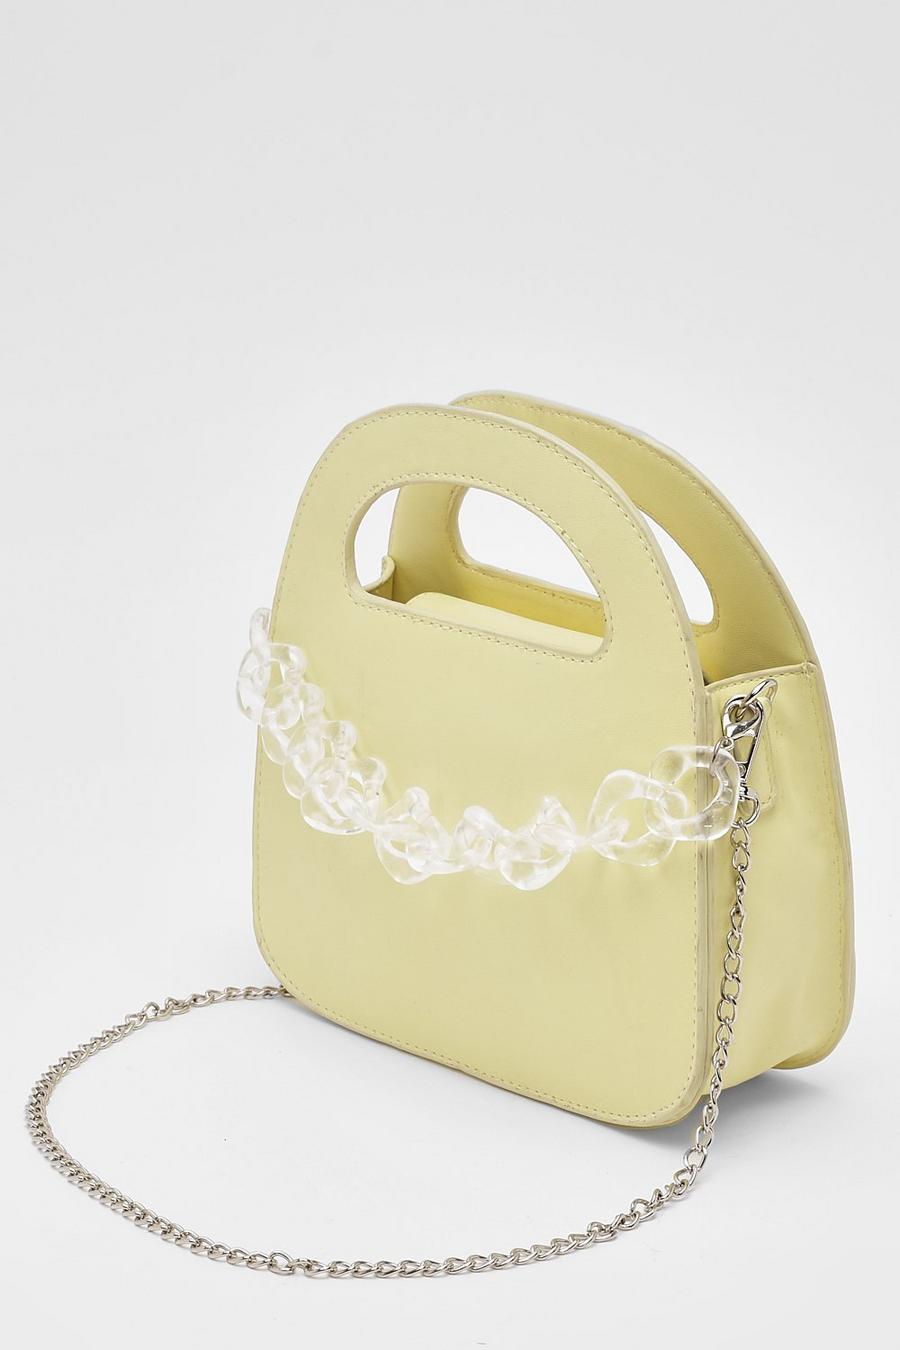 Lemon yellow Acrylic Chain Grab Bag